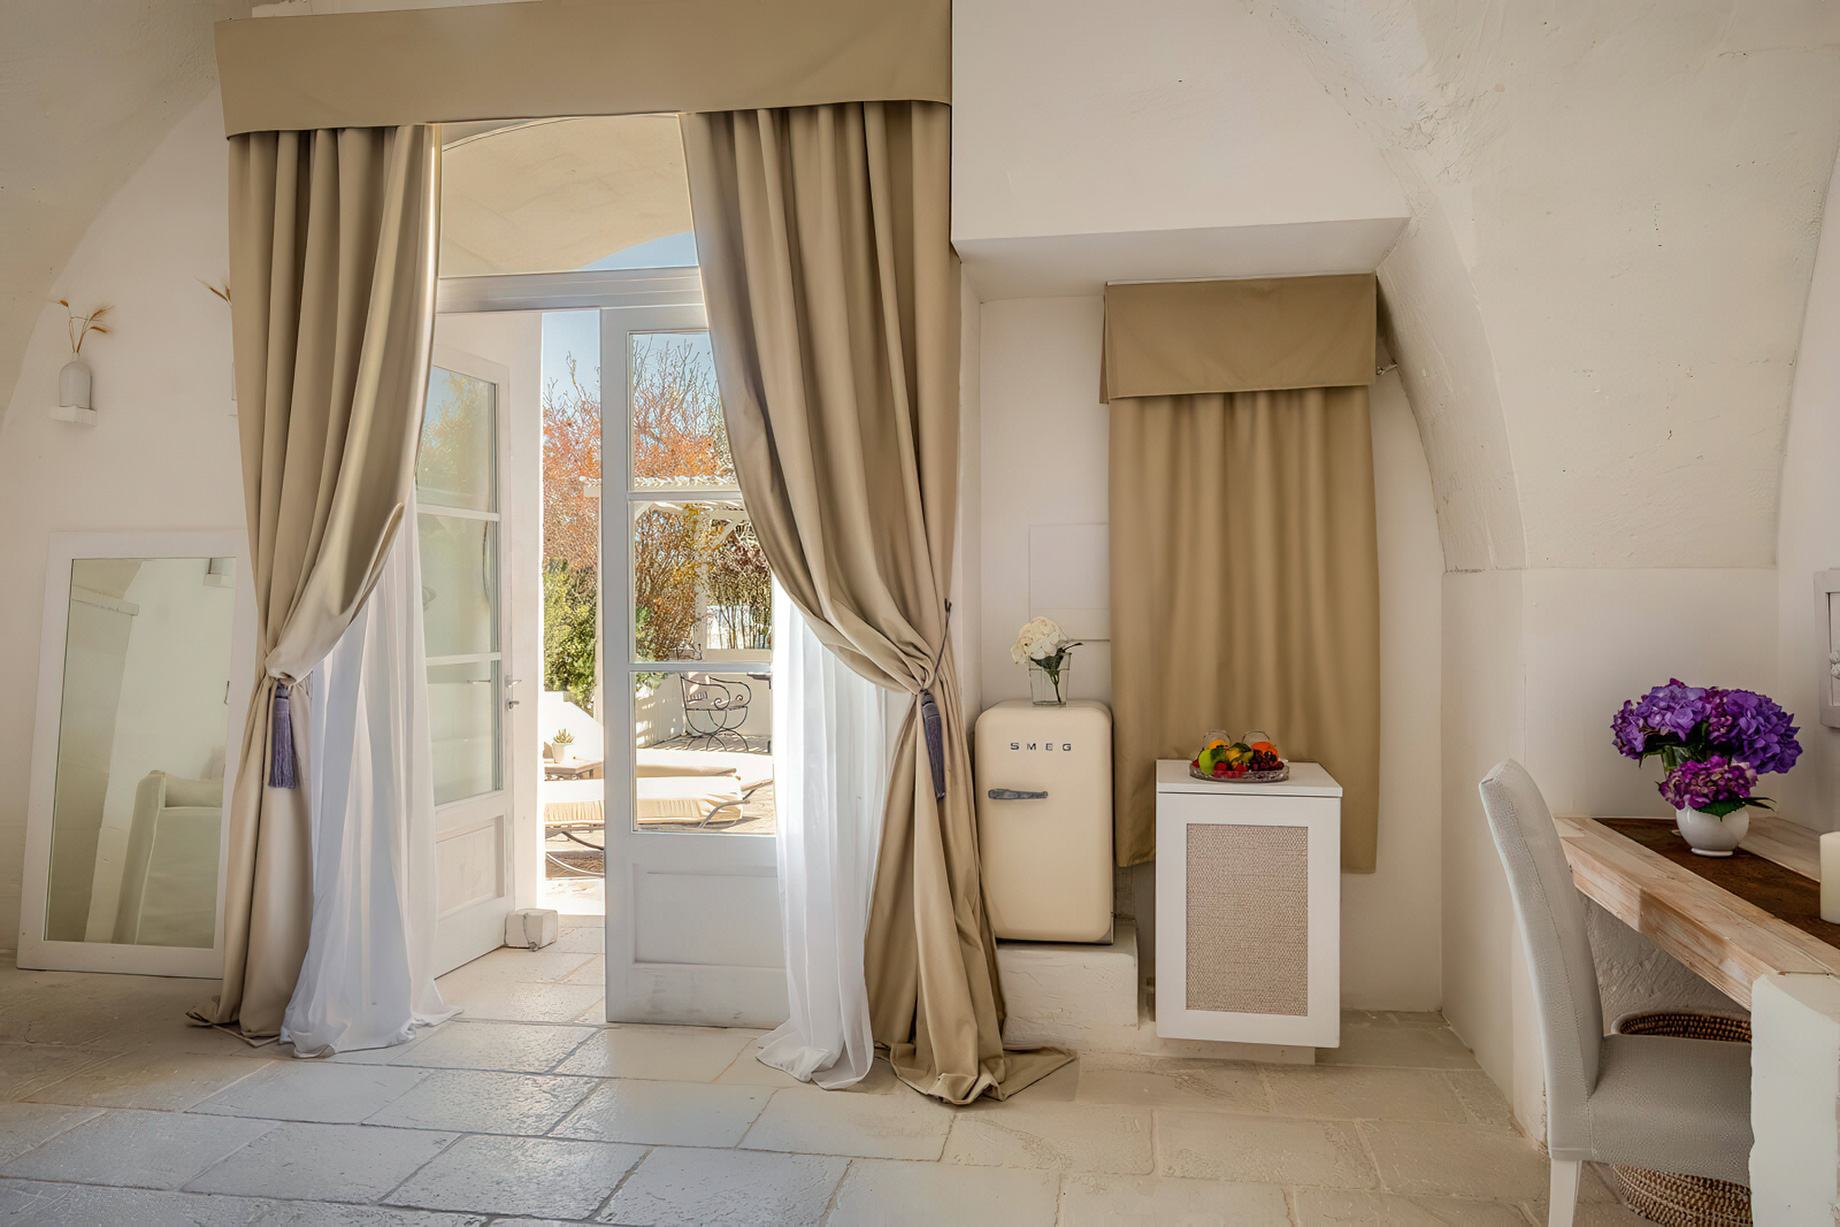 Baglioni Masseria Muzza Hotel – Puglia, Italy – Deluxe Suite Interior